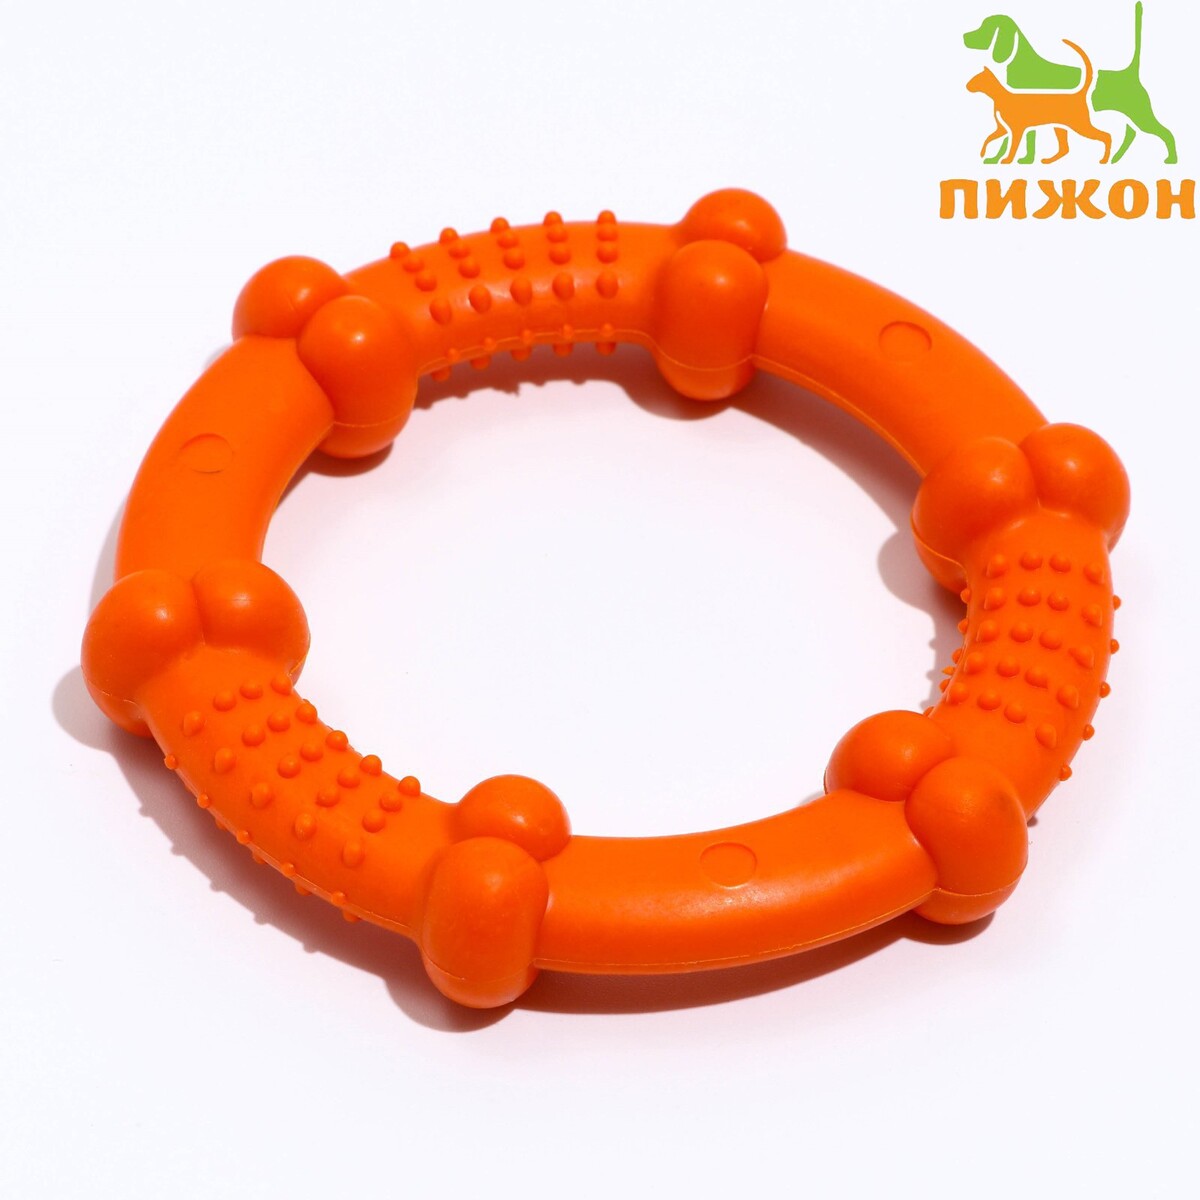 Кольцо рельефное из термопластичной резины, не тонет, 9,5 см, оранжевое кольцо рельефное из термопластичной резины не тонет 9 5 см оранжевое